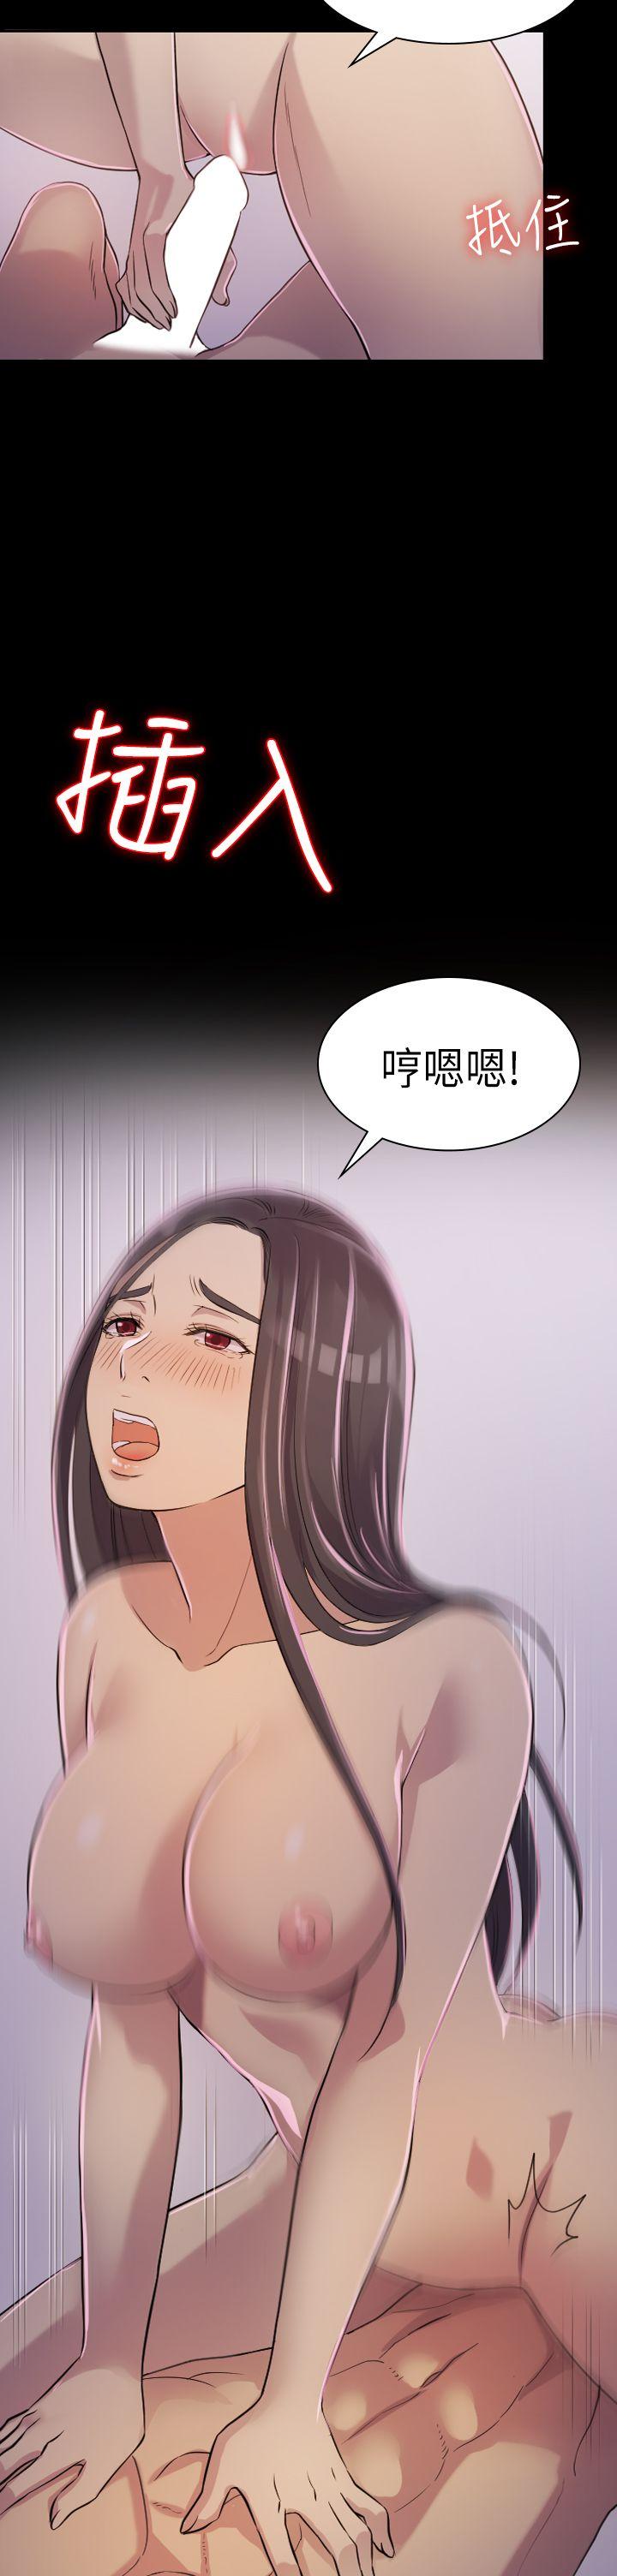 韩国污漫画 初戀陷阱 第2话 12